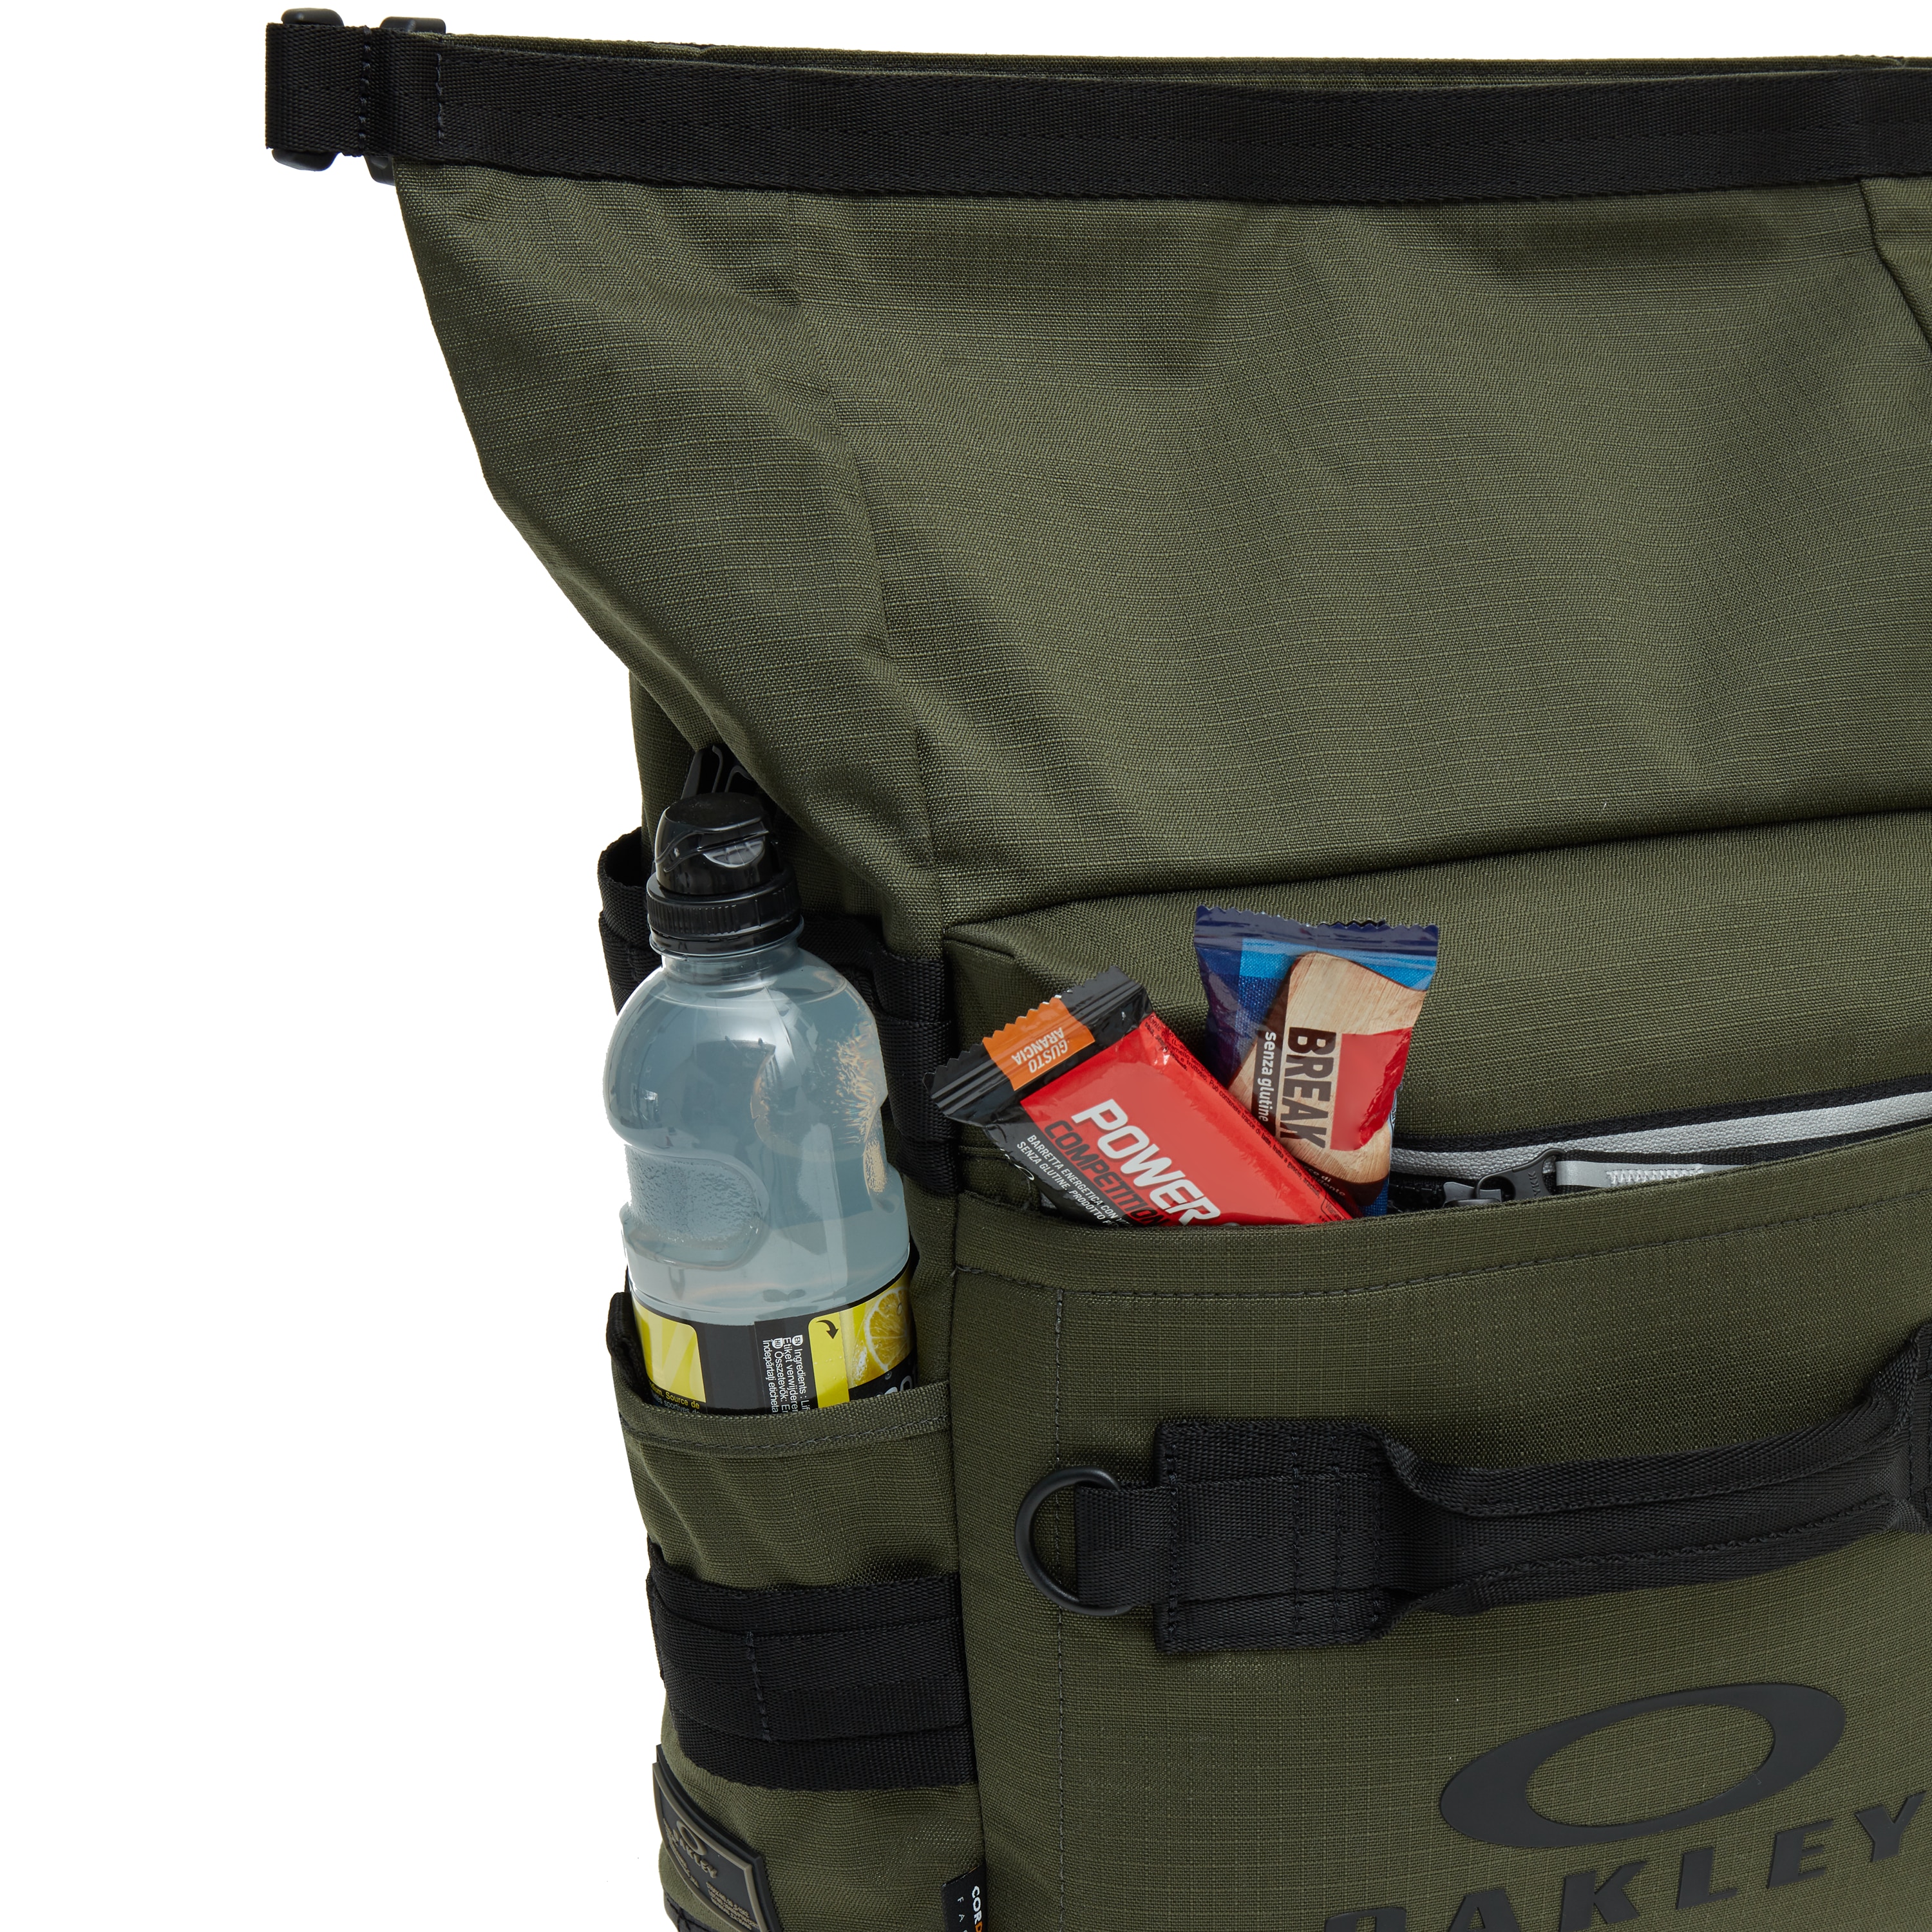 oakley utility folded backpack